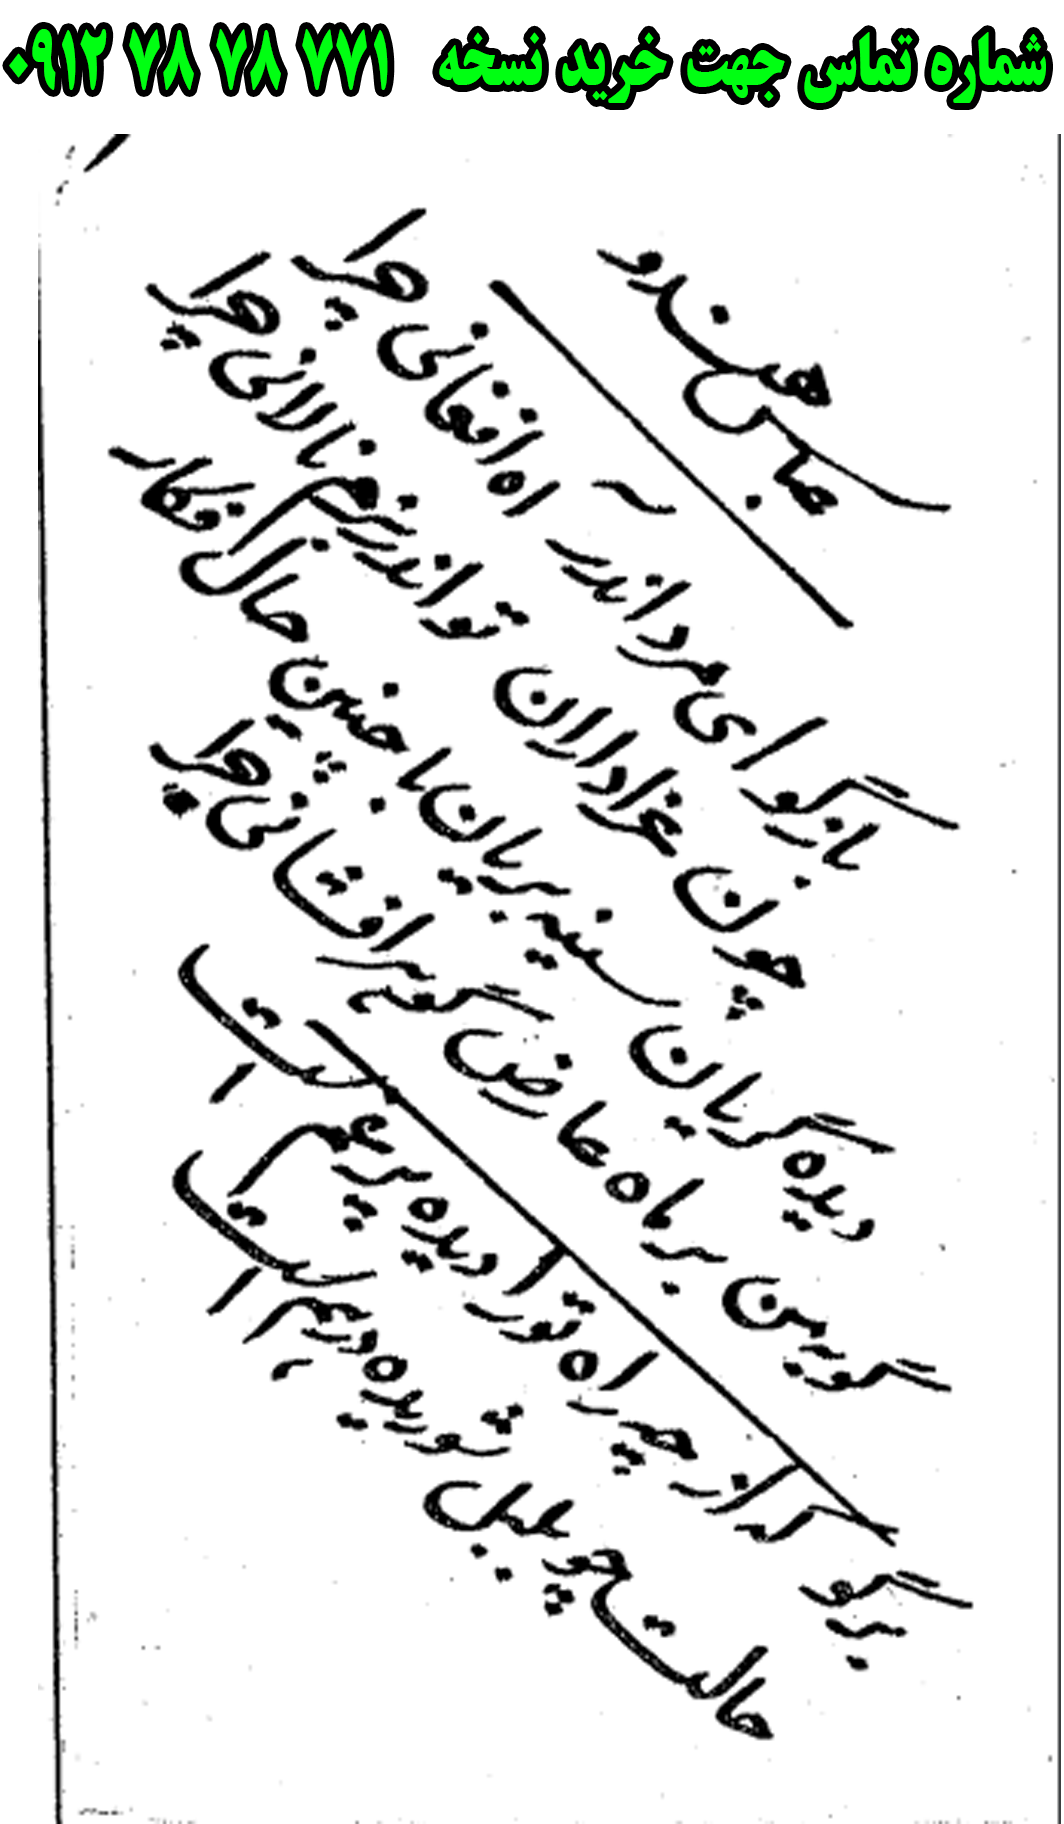 ارسال پستی نسخه تعزیه کامل عباس هندو به کل کشور 09127878771